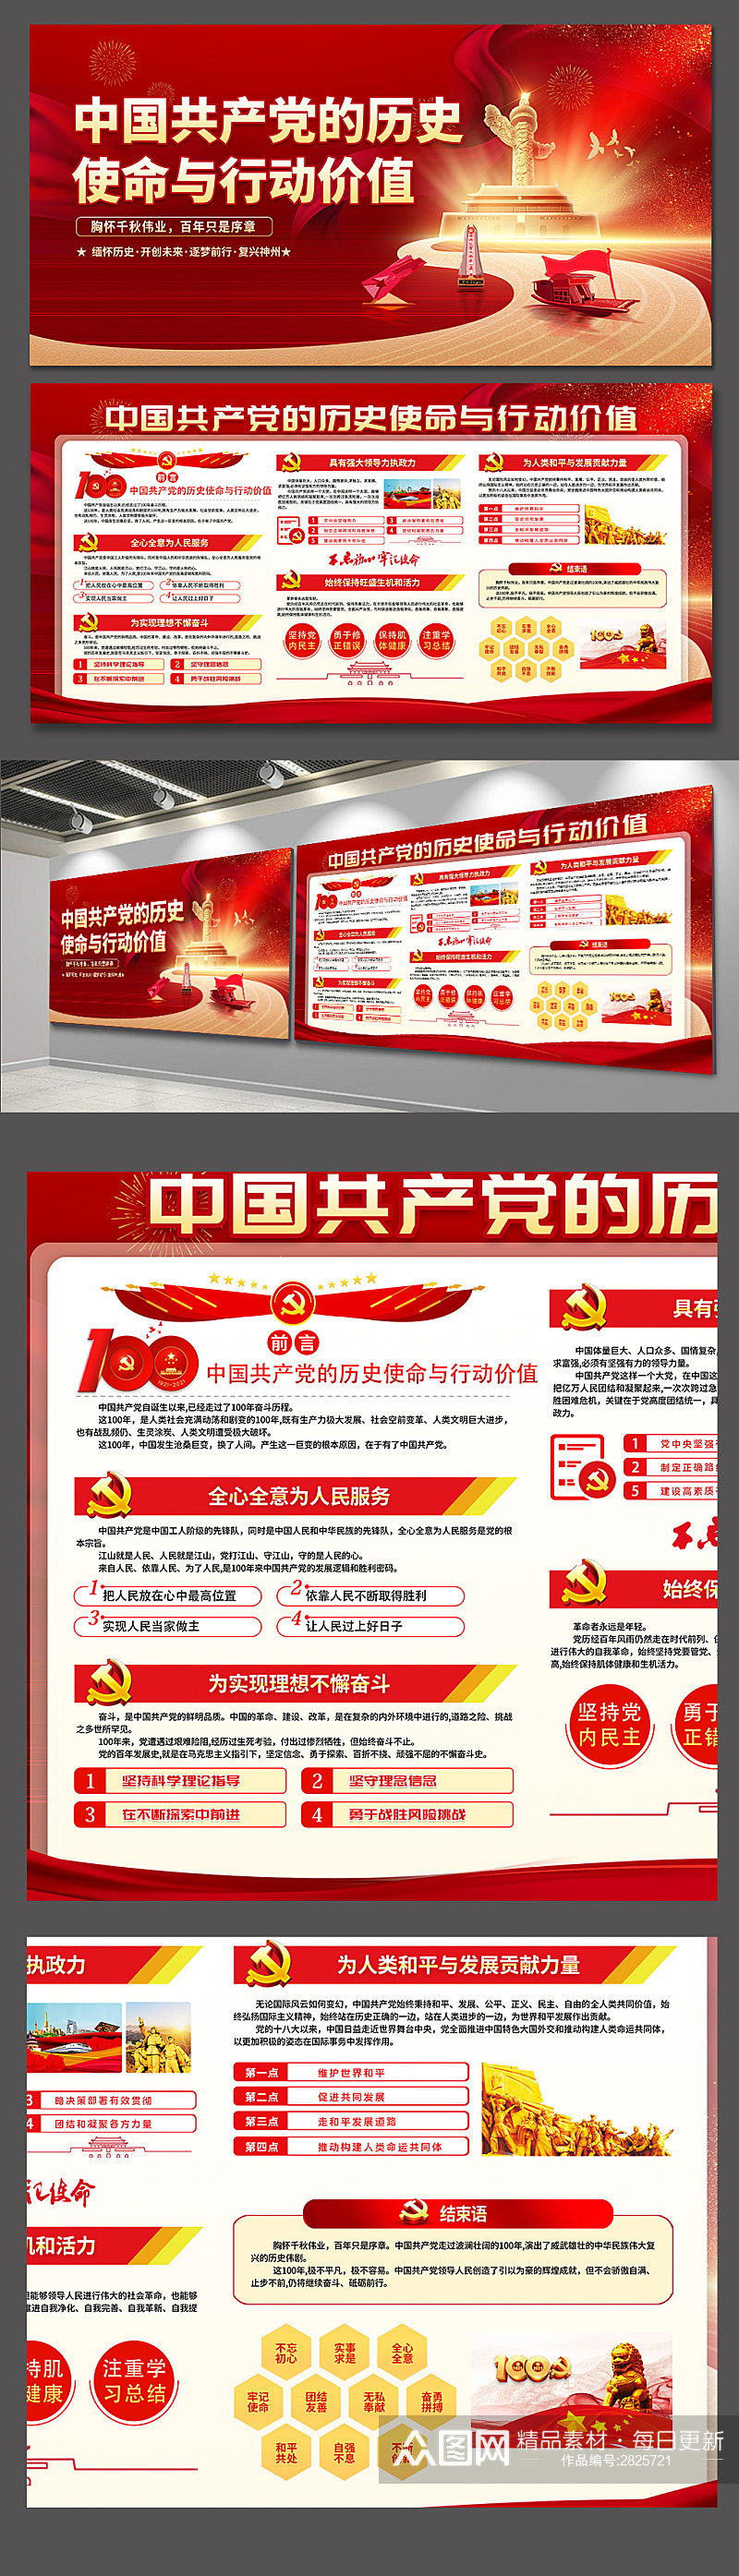 中国共产党的历史使命与行动价值党建展板素材